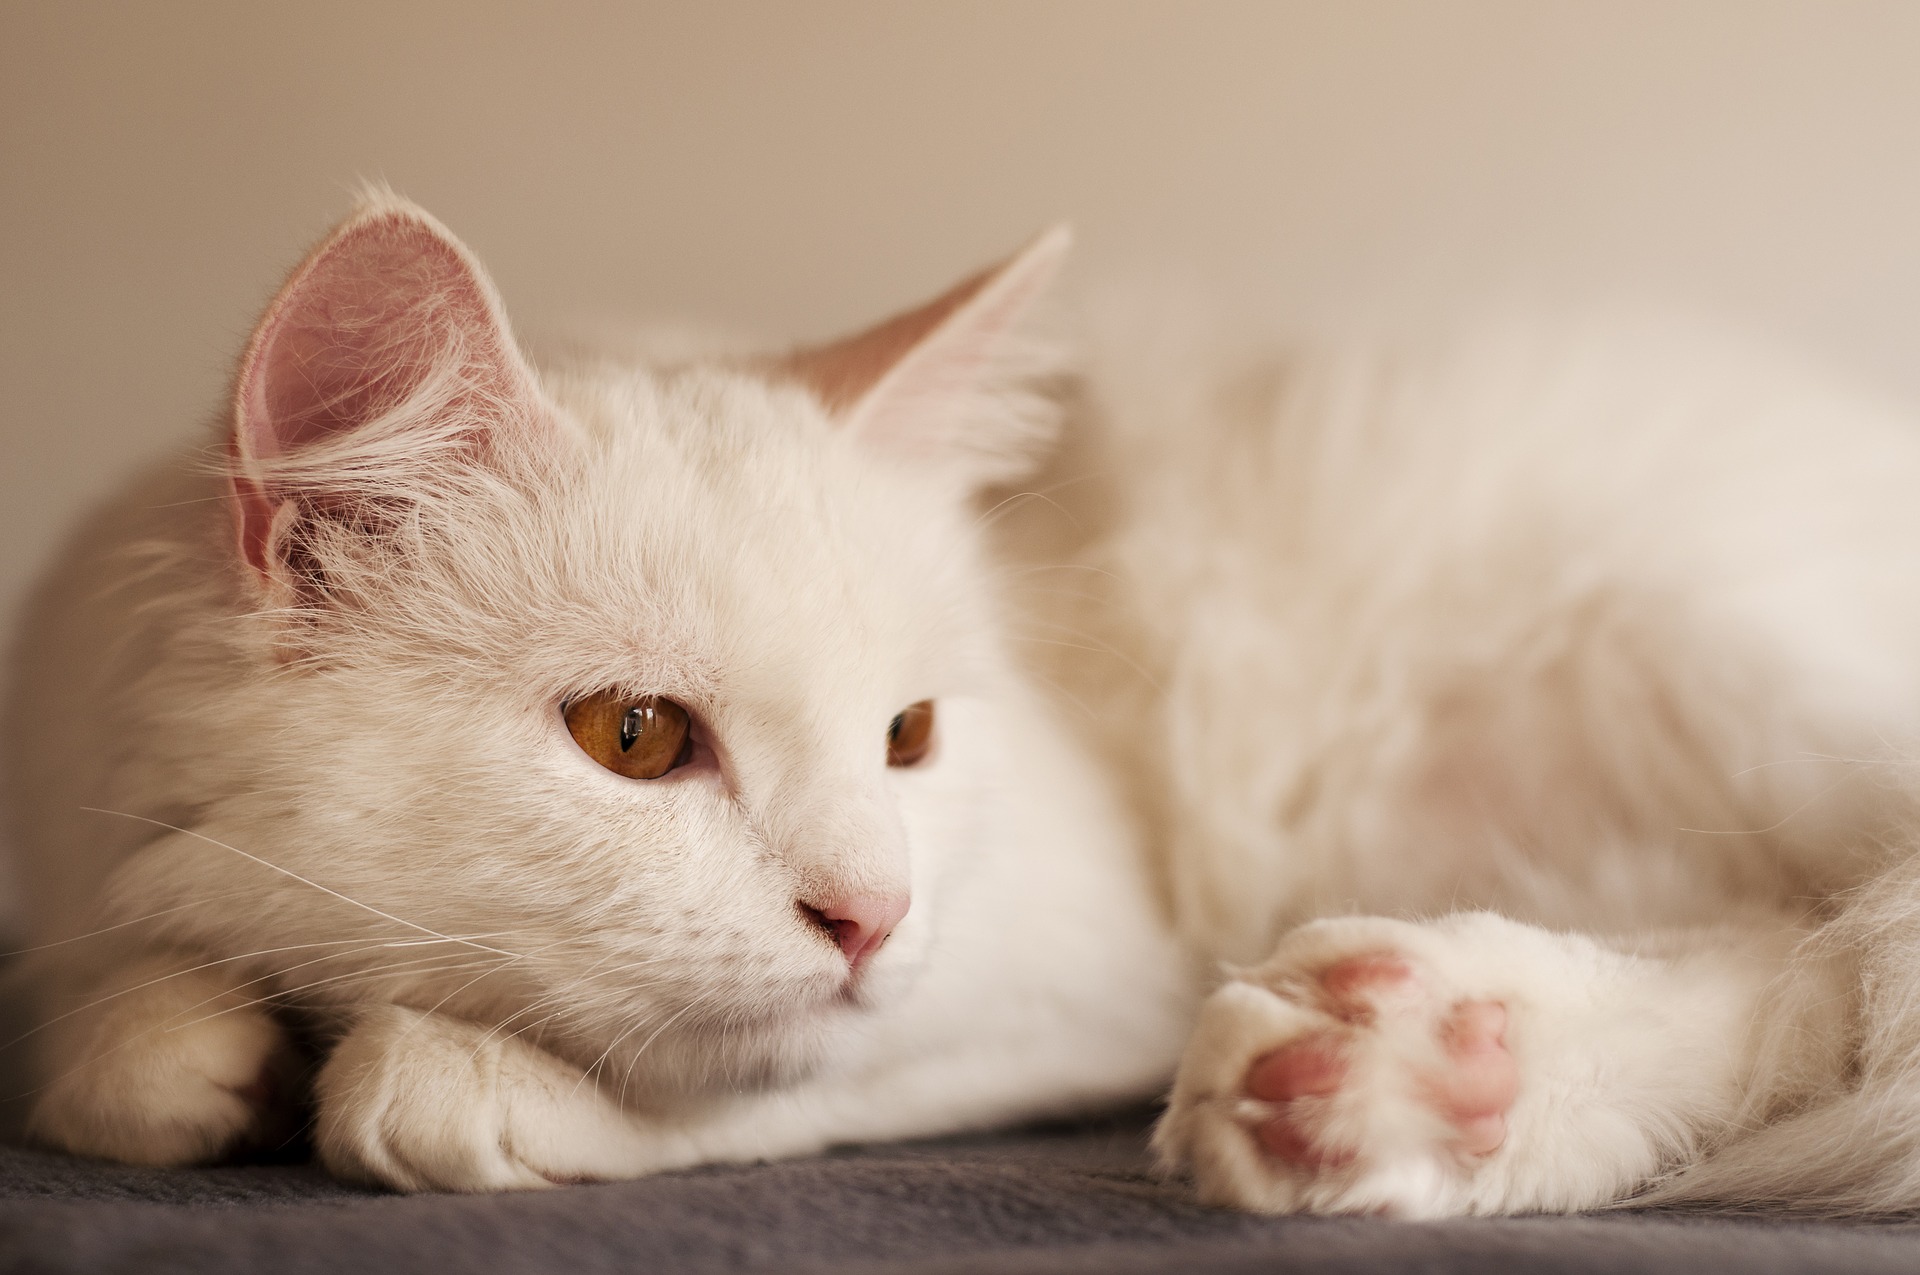 Kot rasy angora turecka ma piękną, jedwabiście delikatną sierść. Należy ją regularnie czesać, najlepiej grzebieniem o wąsko rozstawionych ząbkach.